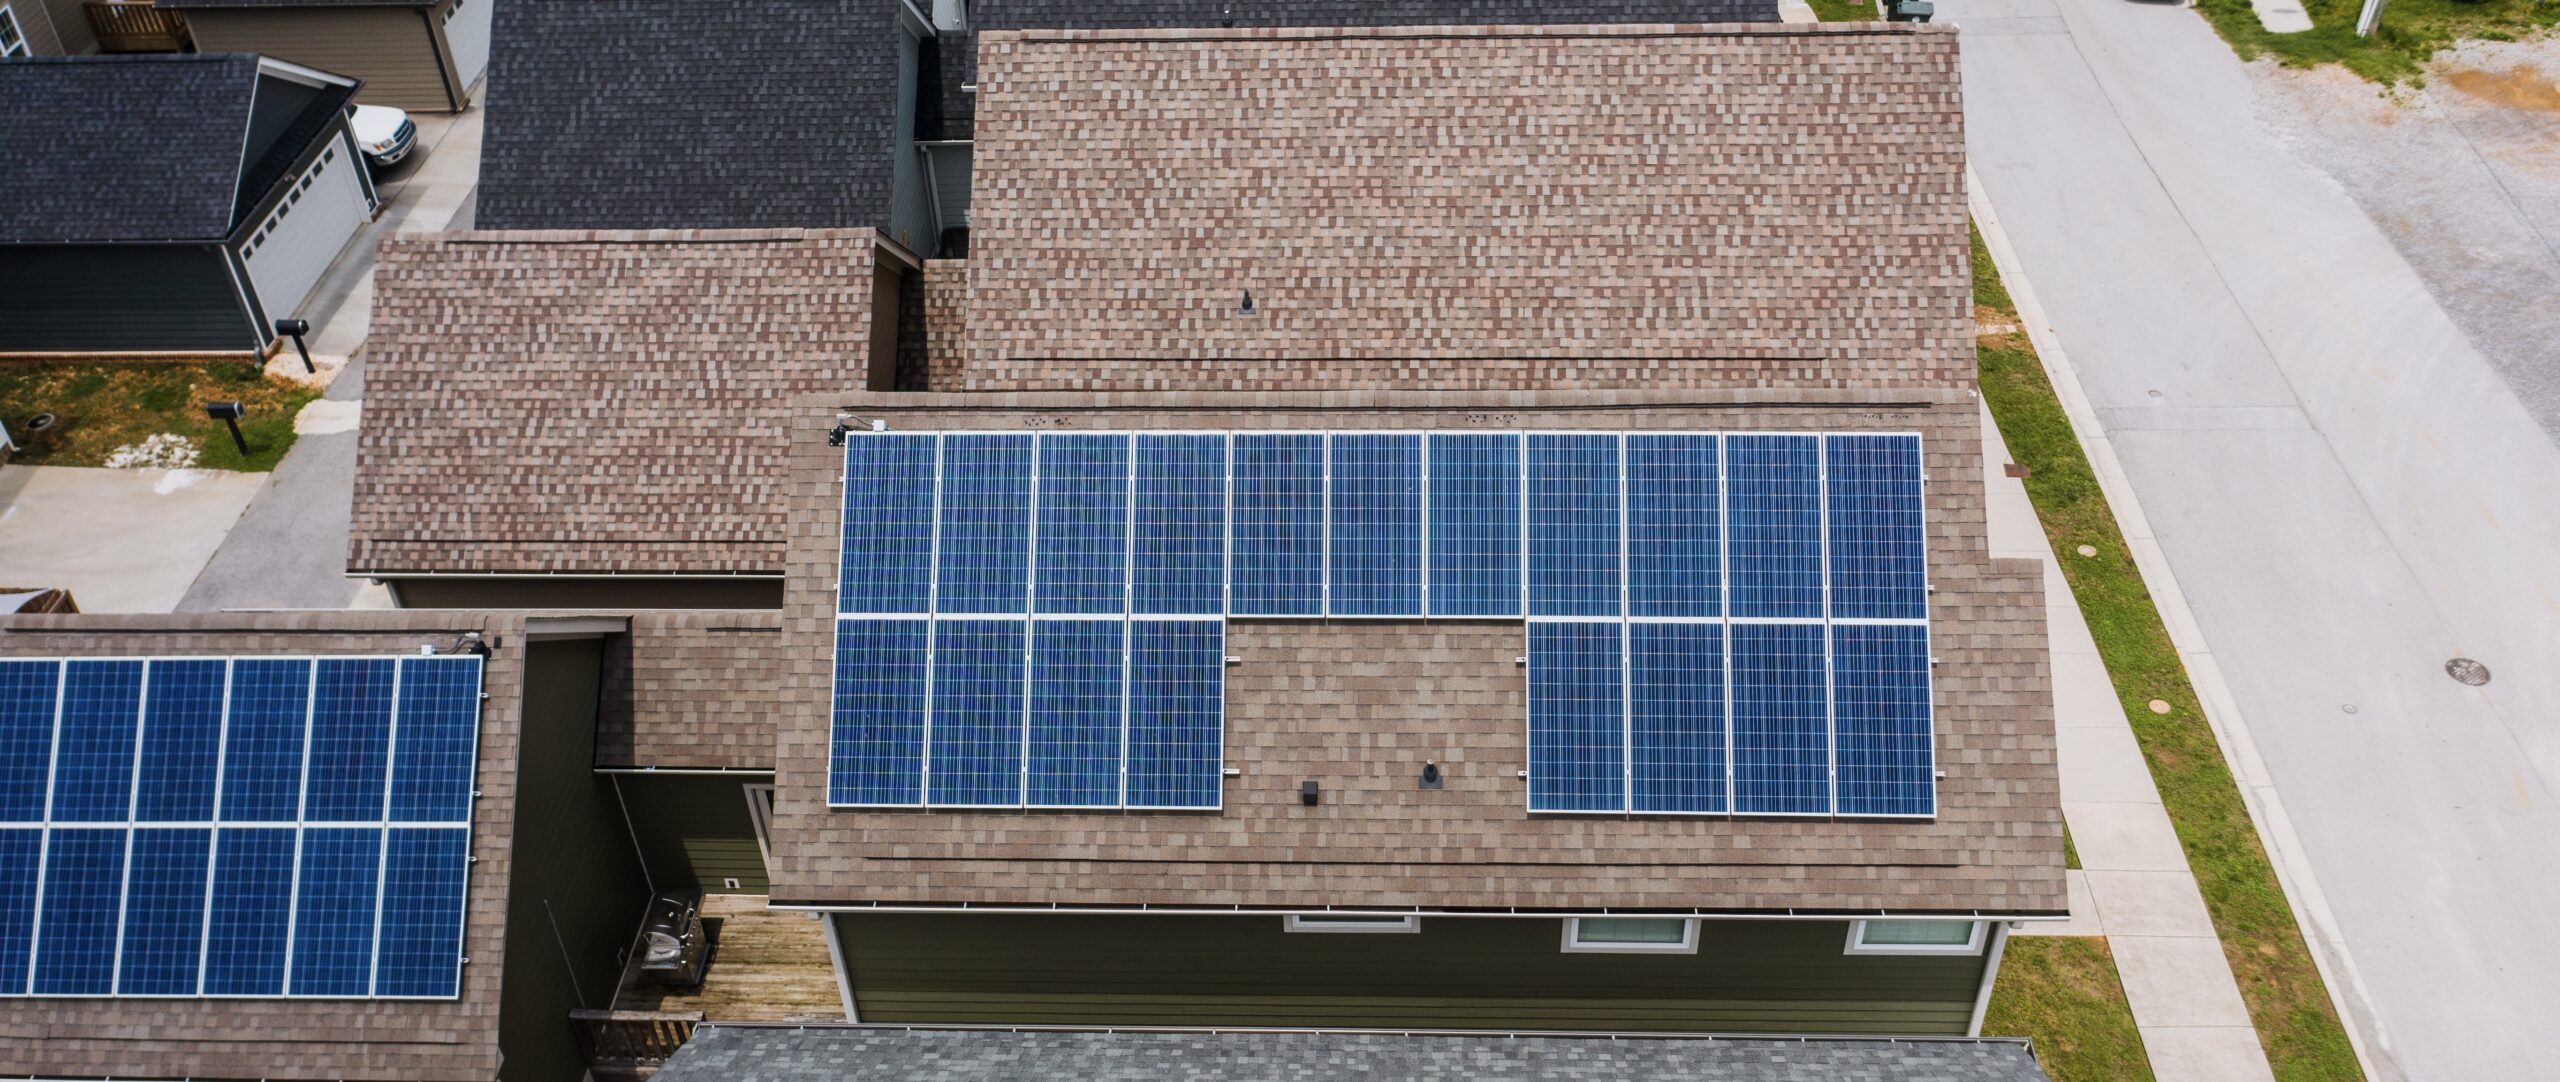 ¿Qué son los sistemas fotovoltaicos BIPV (Sistemas de Energía Eléctrica Fotovoltaica Integrados en los Edificios)?